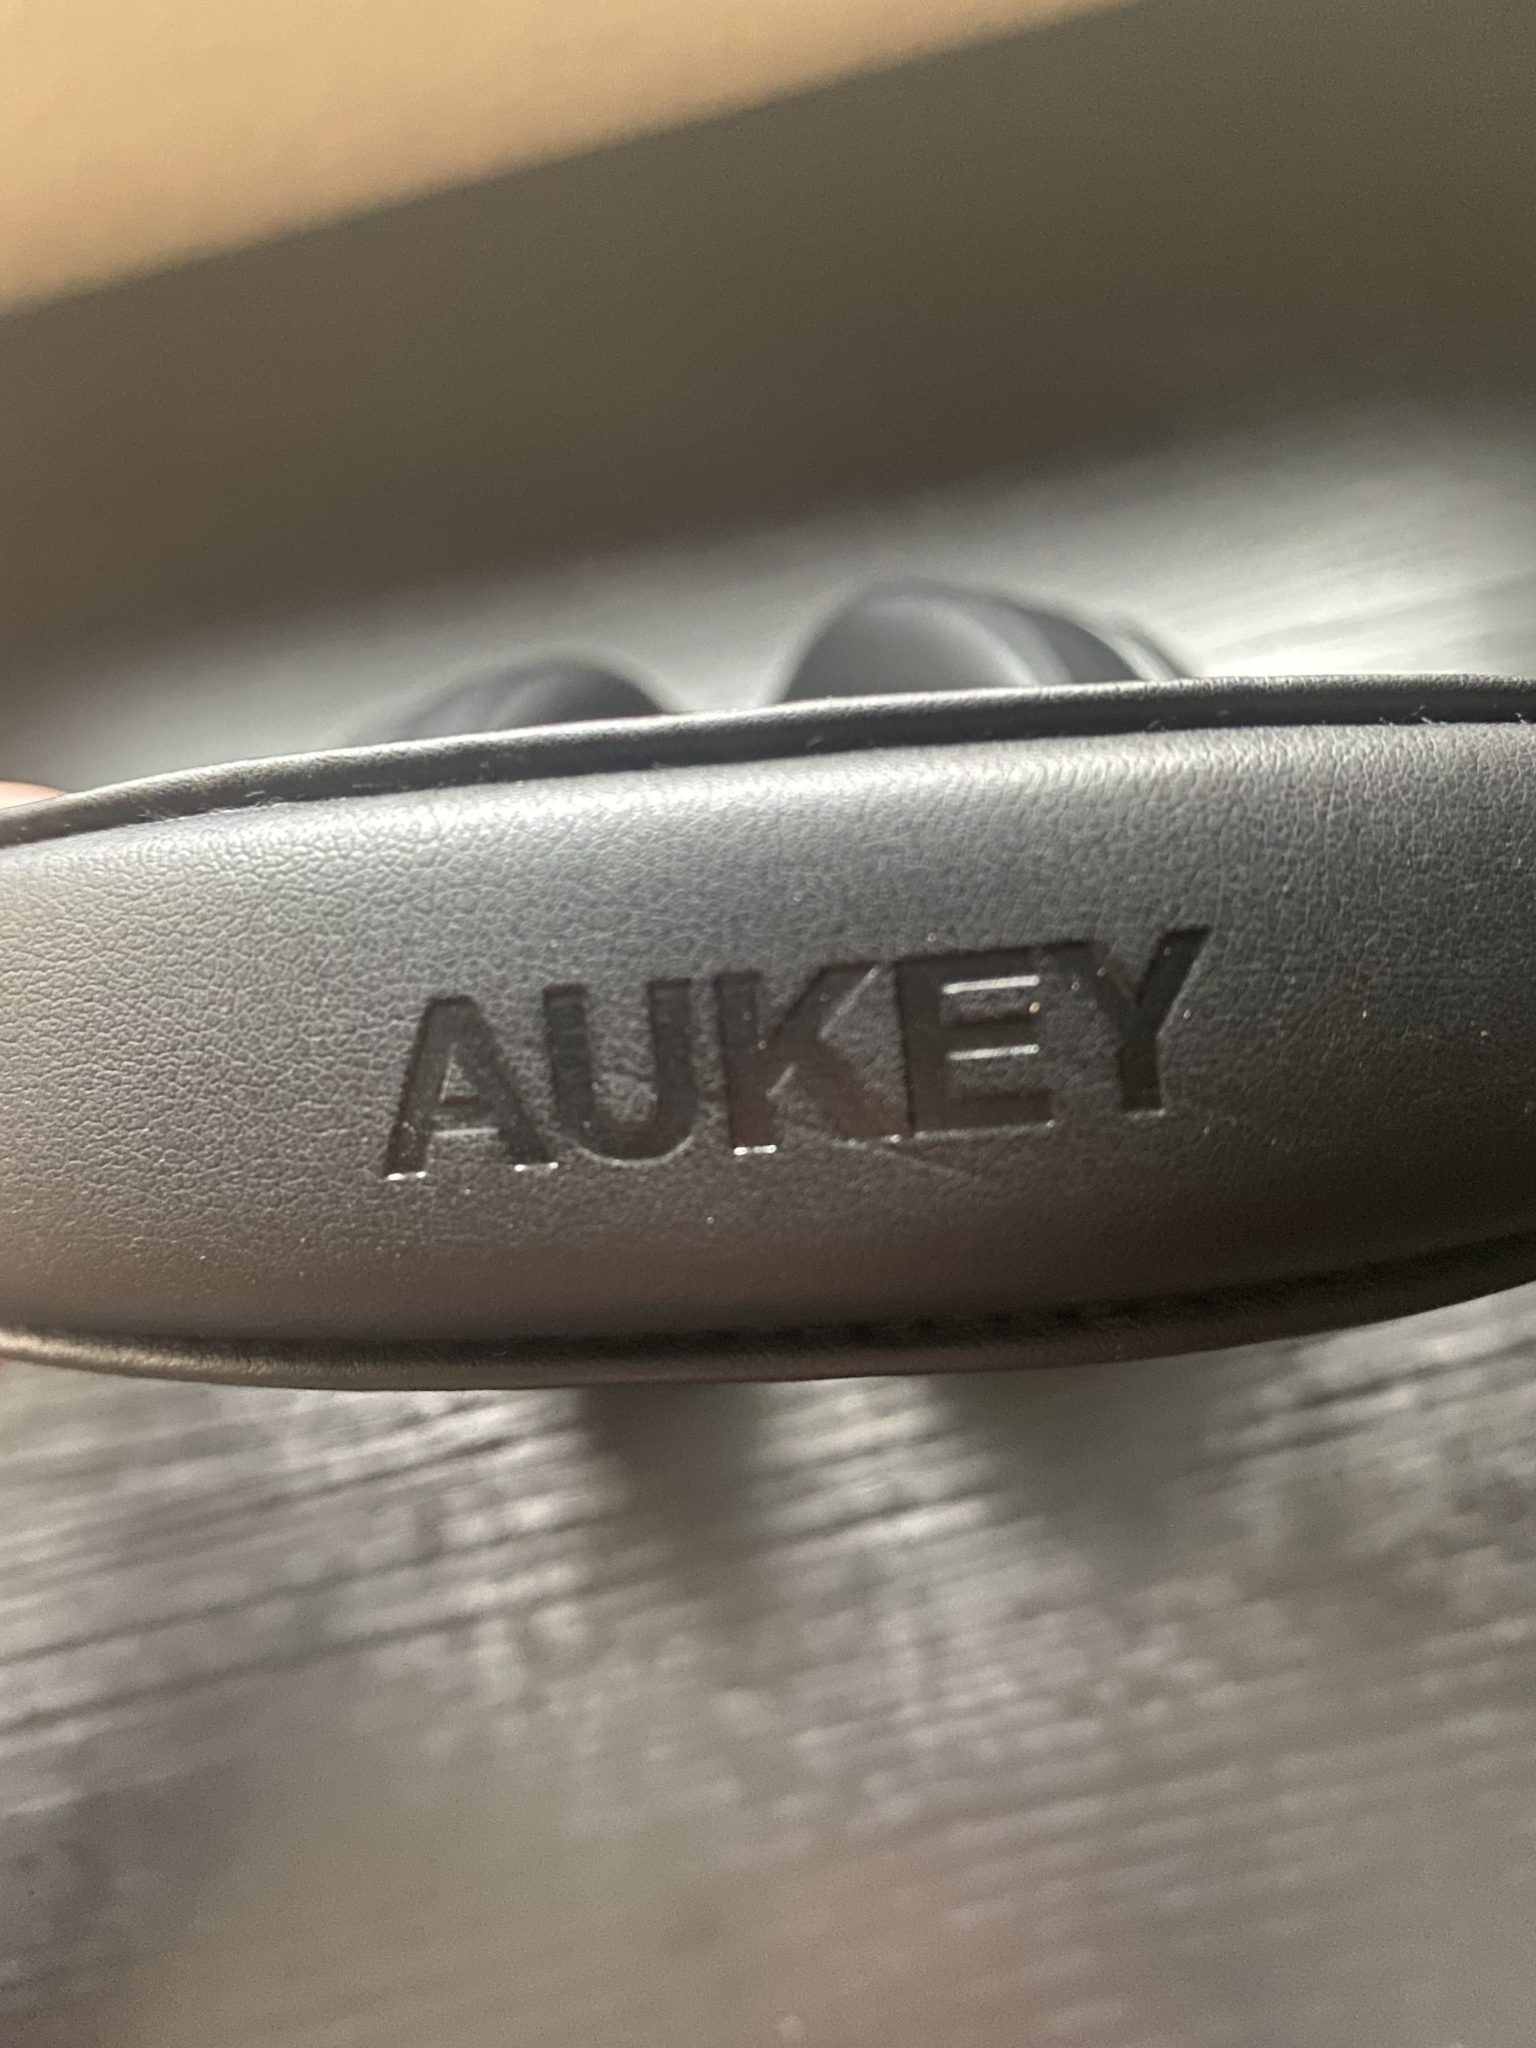 AUKEY  EP-B52 Cascos Bluetooth Inalámbricos – Review en Español